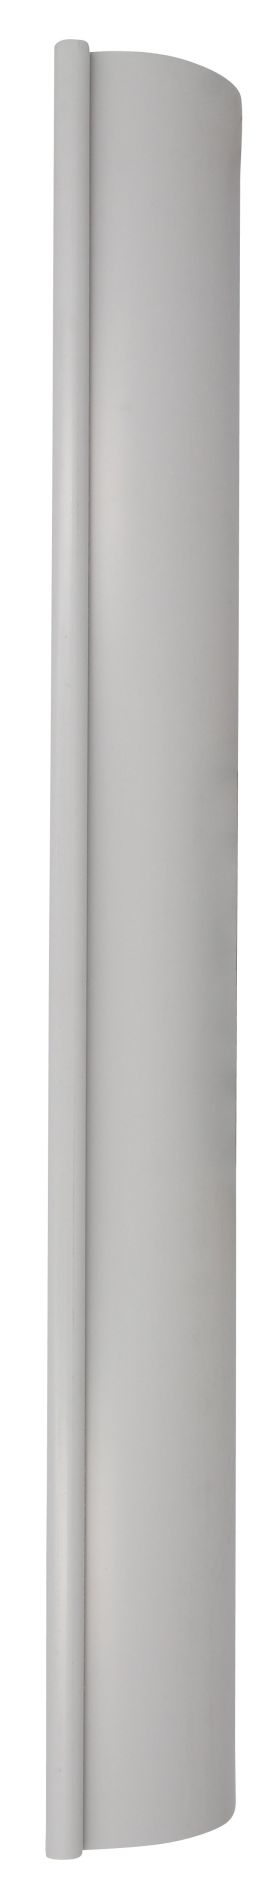 Profile de gouttiere de type 25 en 2 metre gris